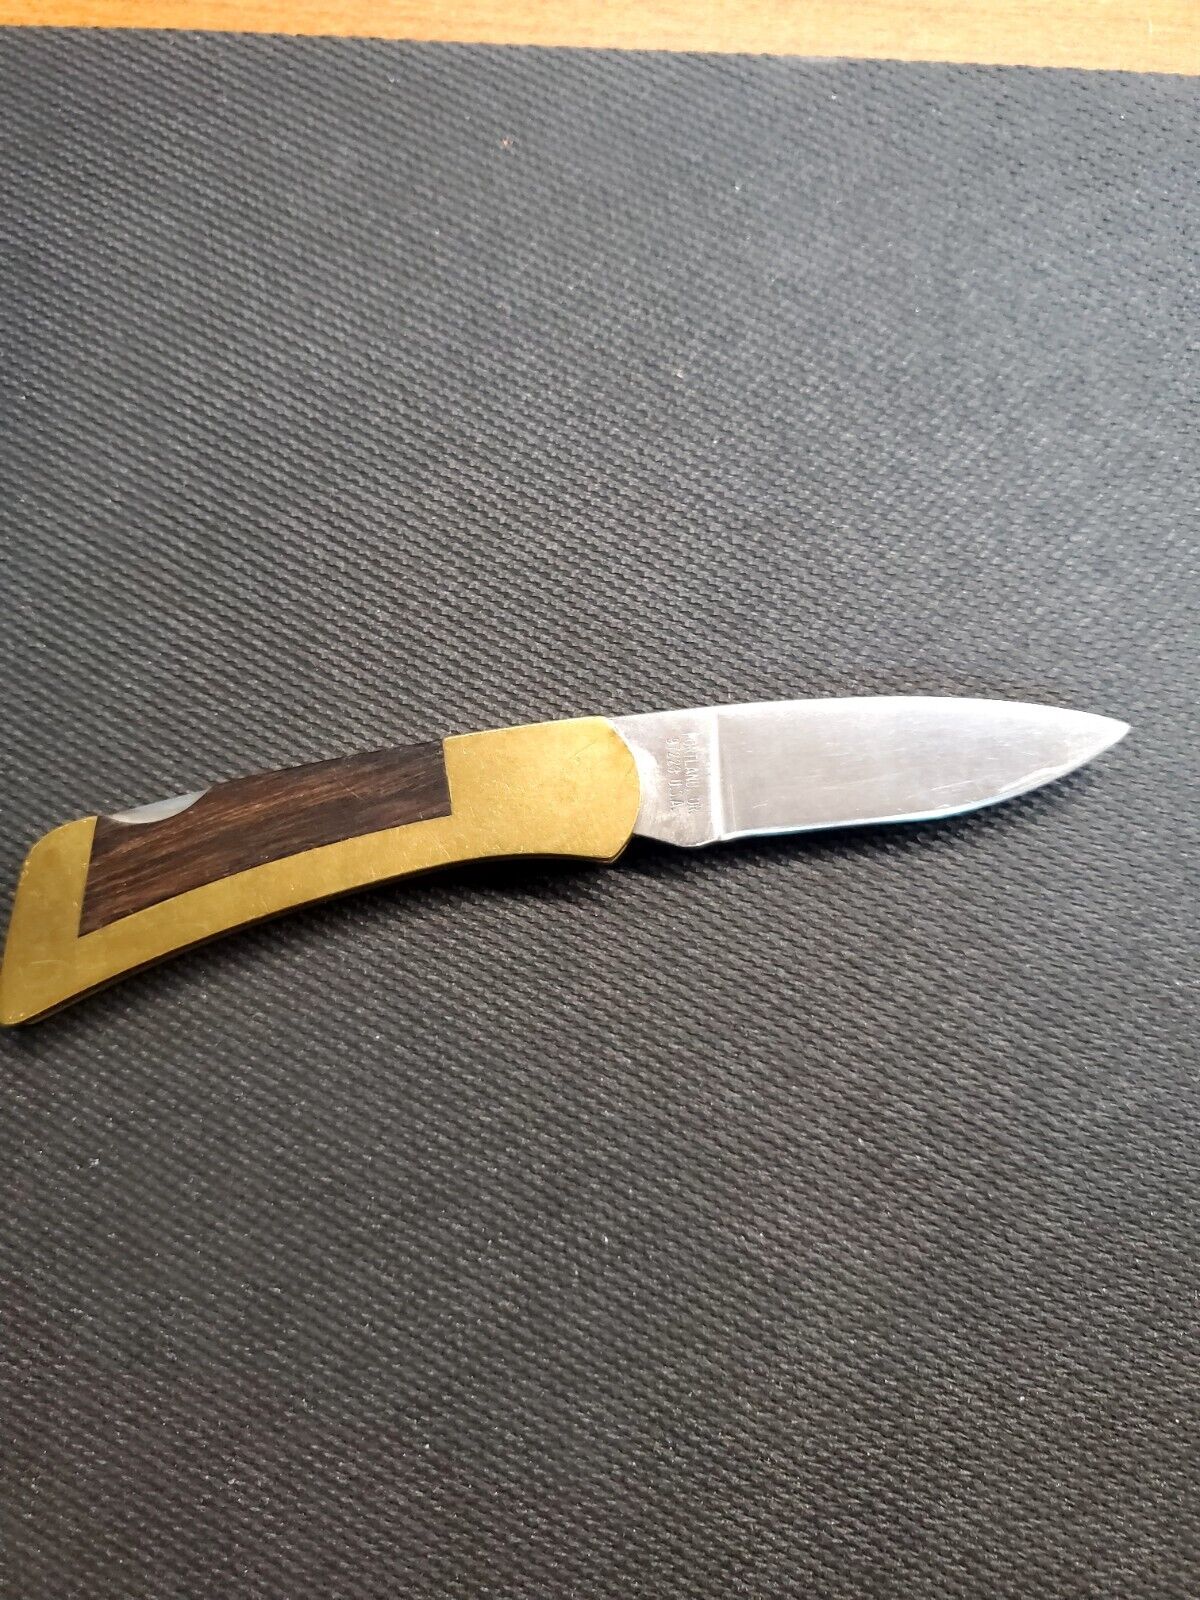 Vintage Gerber folding knife 97223. ENRON.